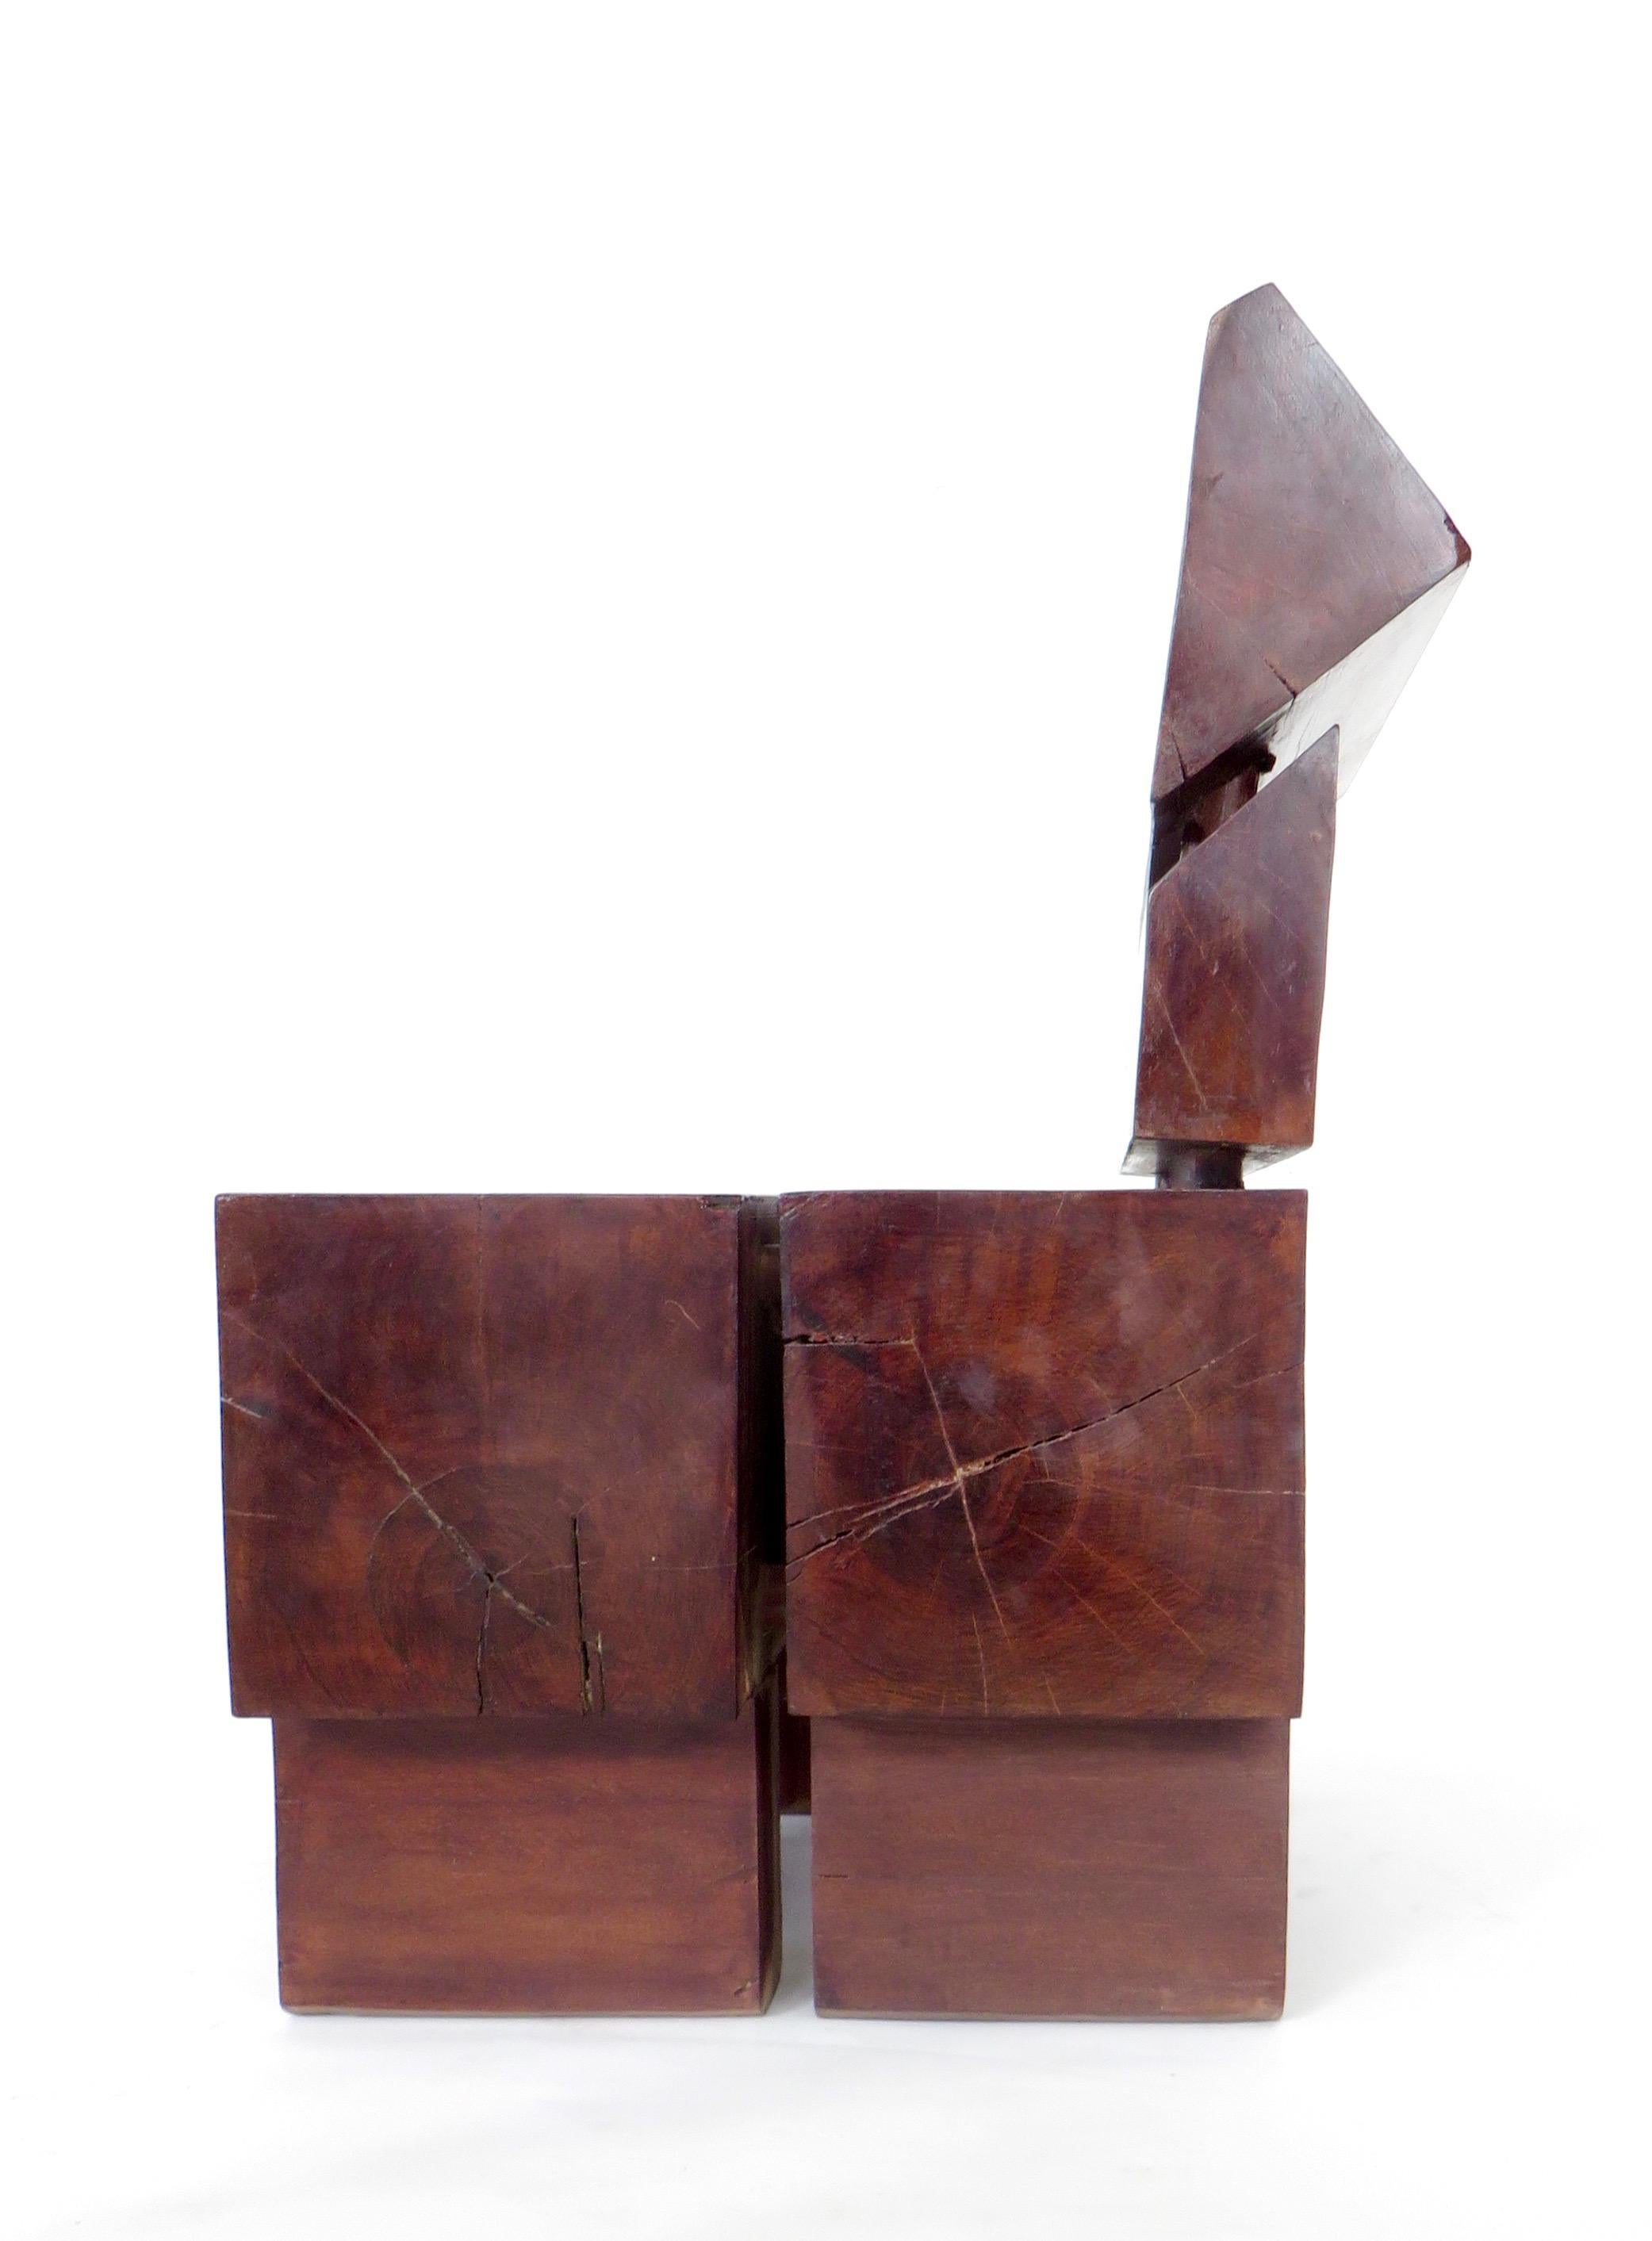 Brazilian Sculptural Low Organic Modernist Wood Chair 4